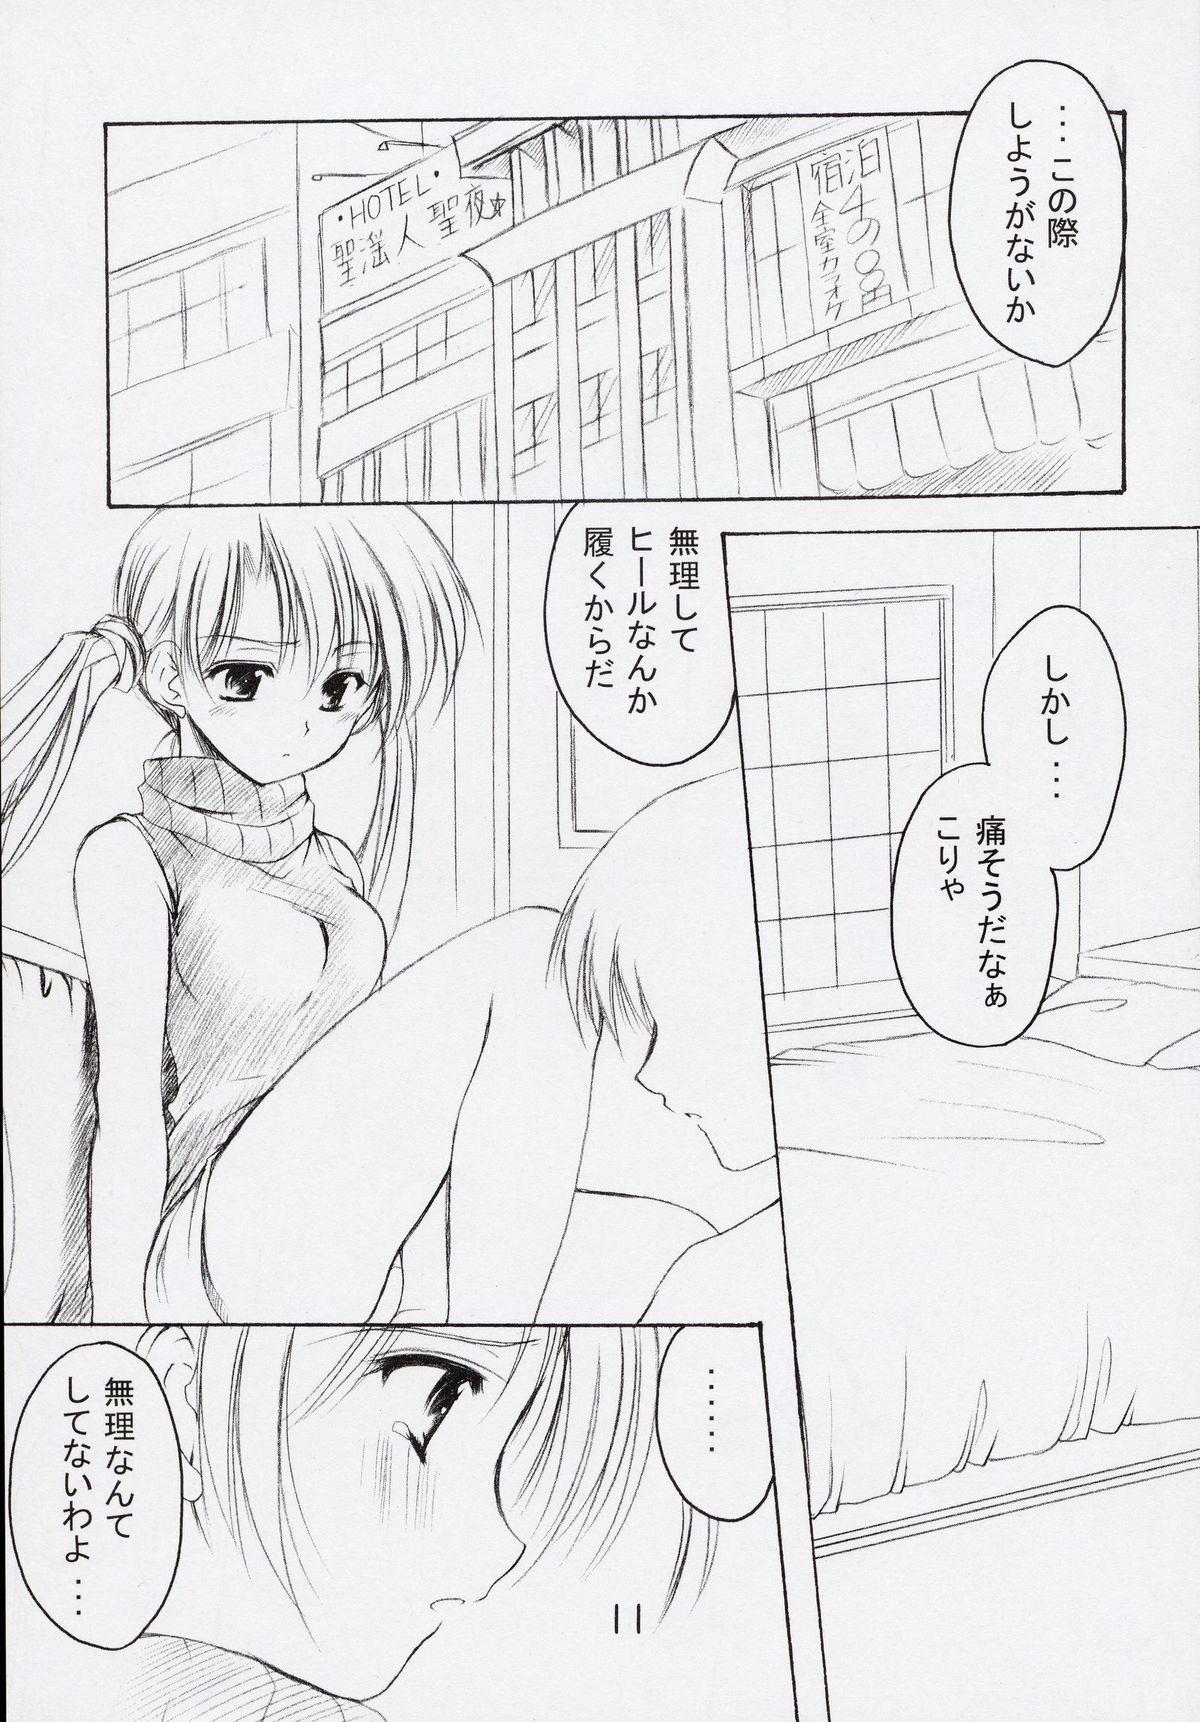 Flashing Oniisama He ... 5 Sister Princess "Sakuya" Book No.9 - Sister princess Compilation - Page 10